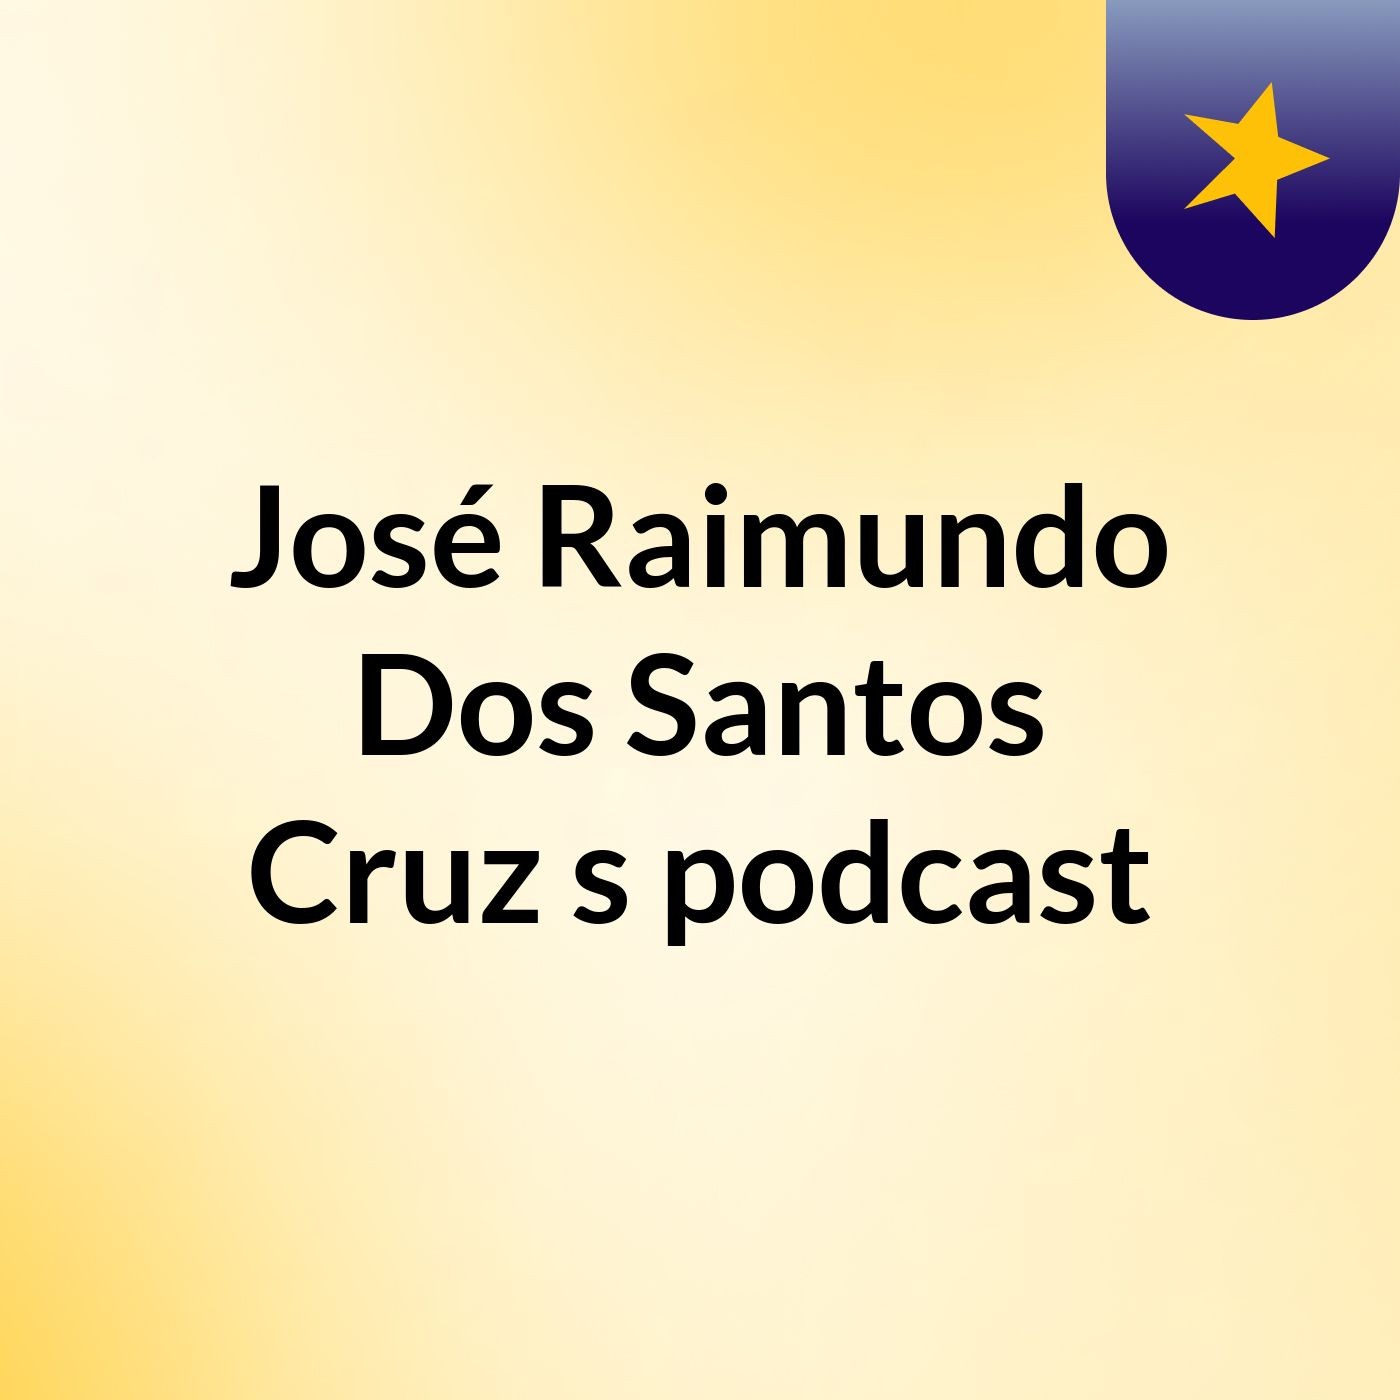 José Raimundo Dos Santos Cruz's podcast